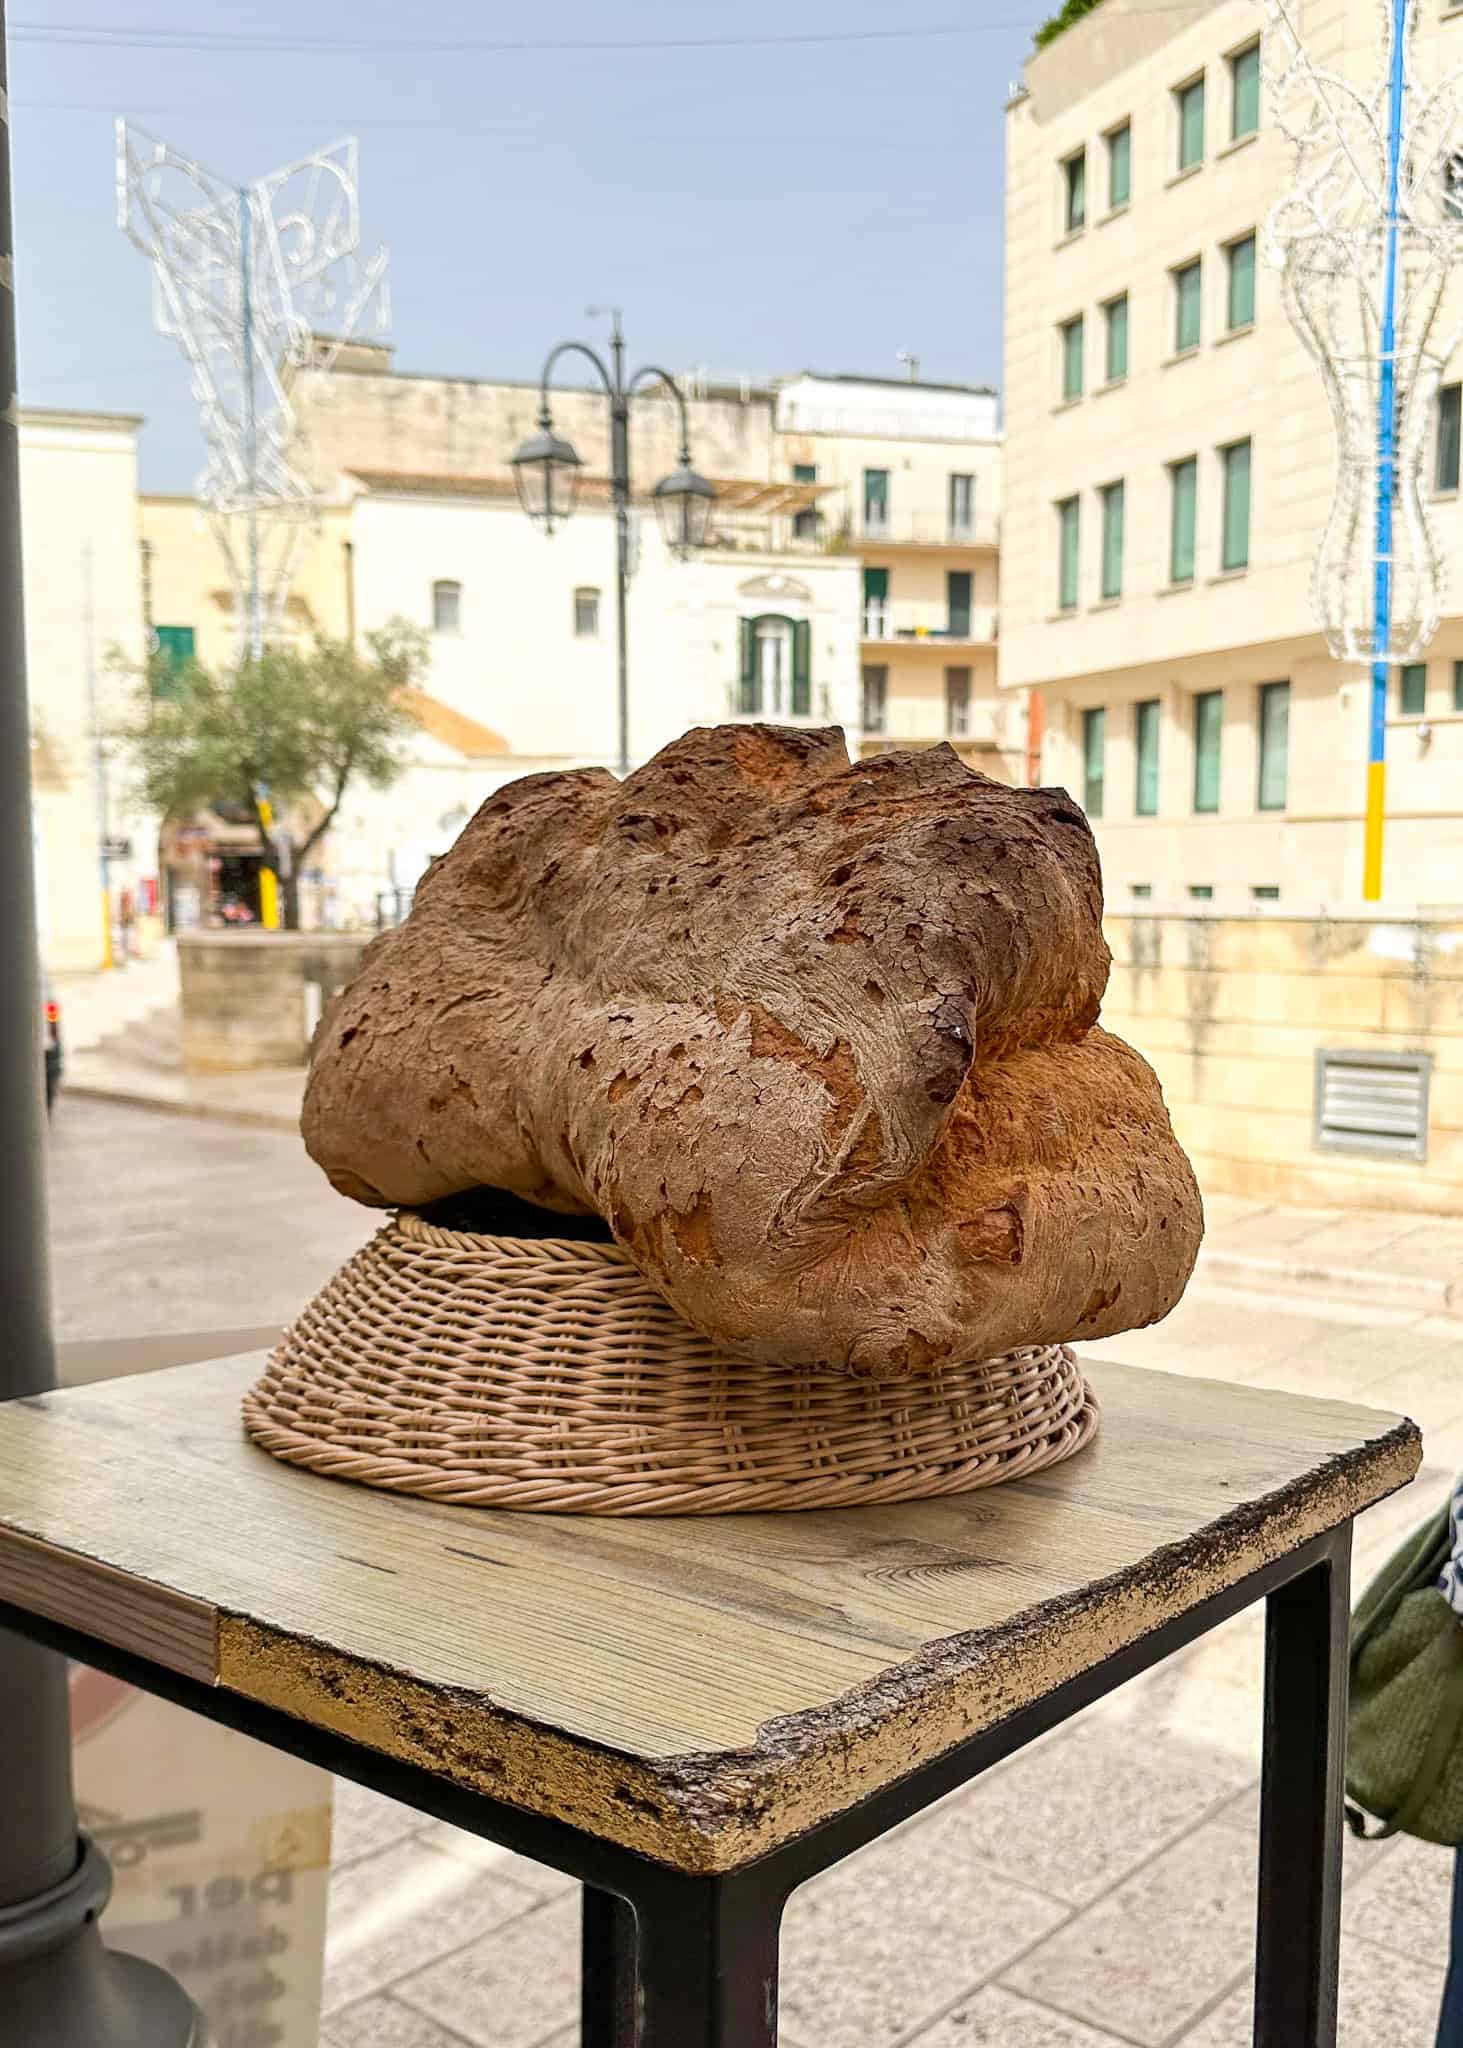 matera bread